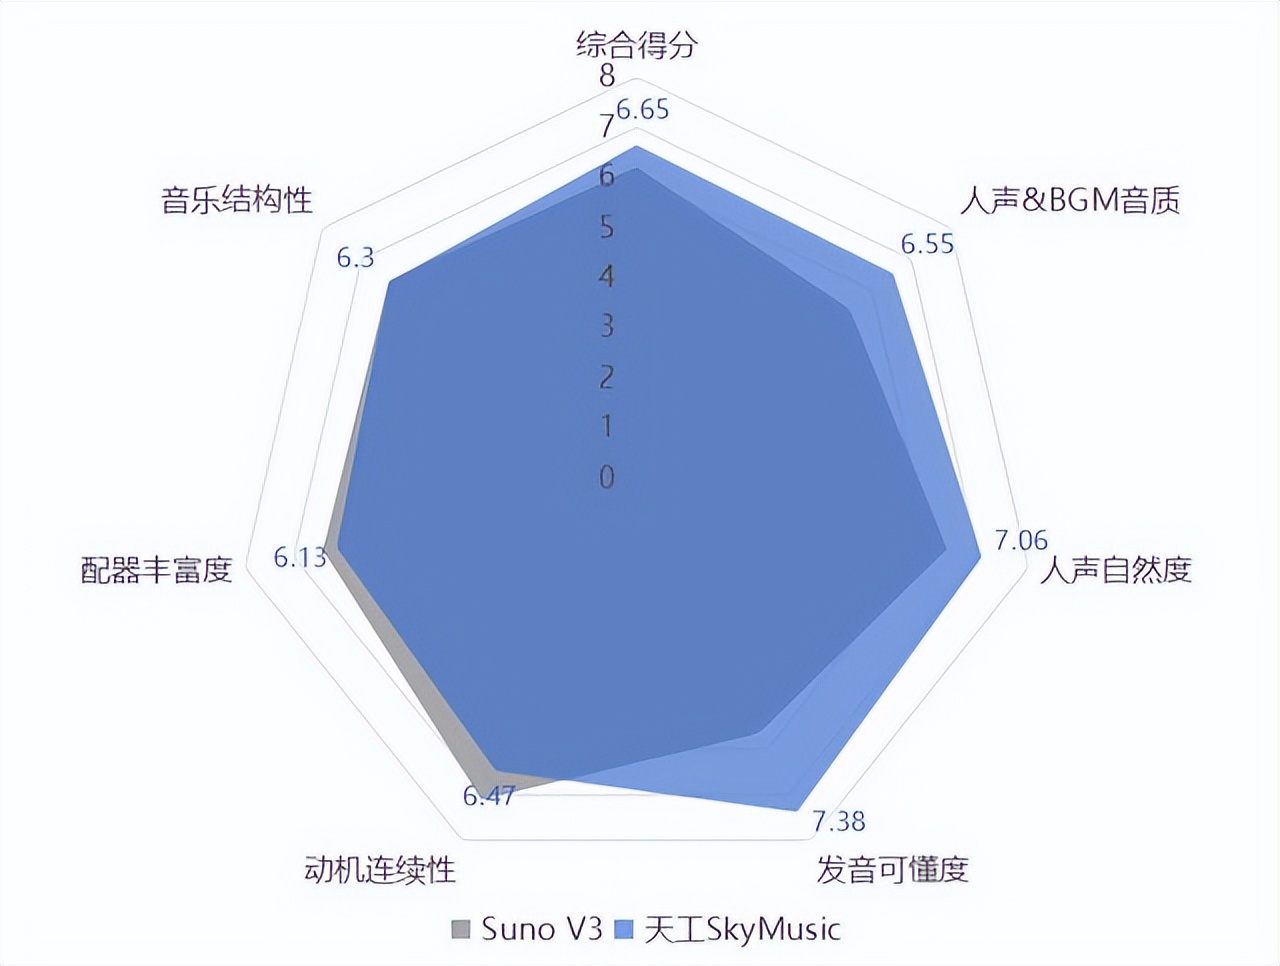 中国首个音乐SOTA模型「天工音乐大模型」今日公测 | 量子位